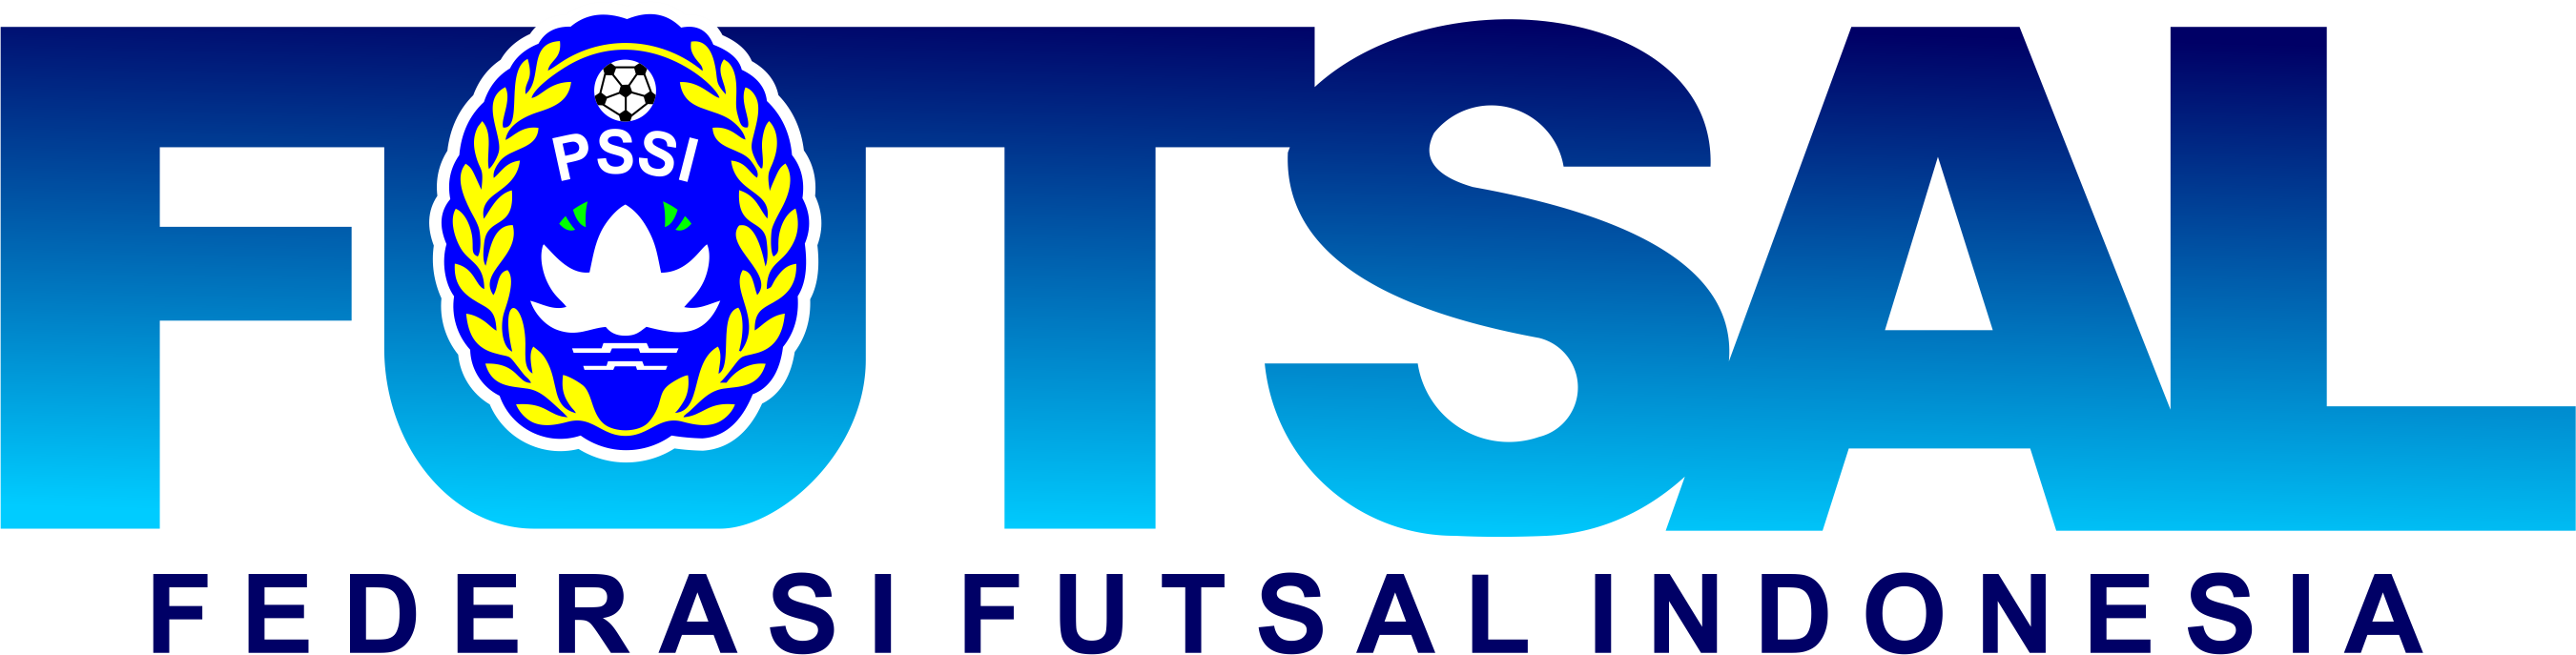 18 Logo Futsal Png Desain Logo Desain Seni - IMAGESEE